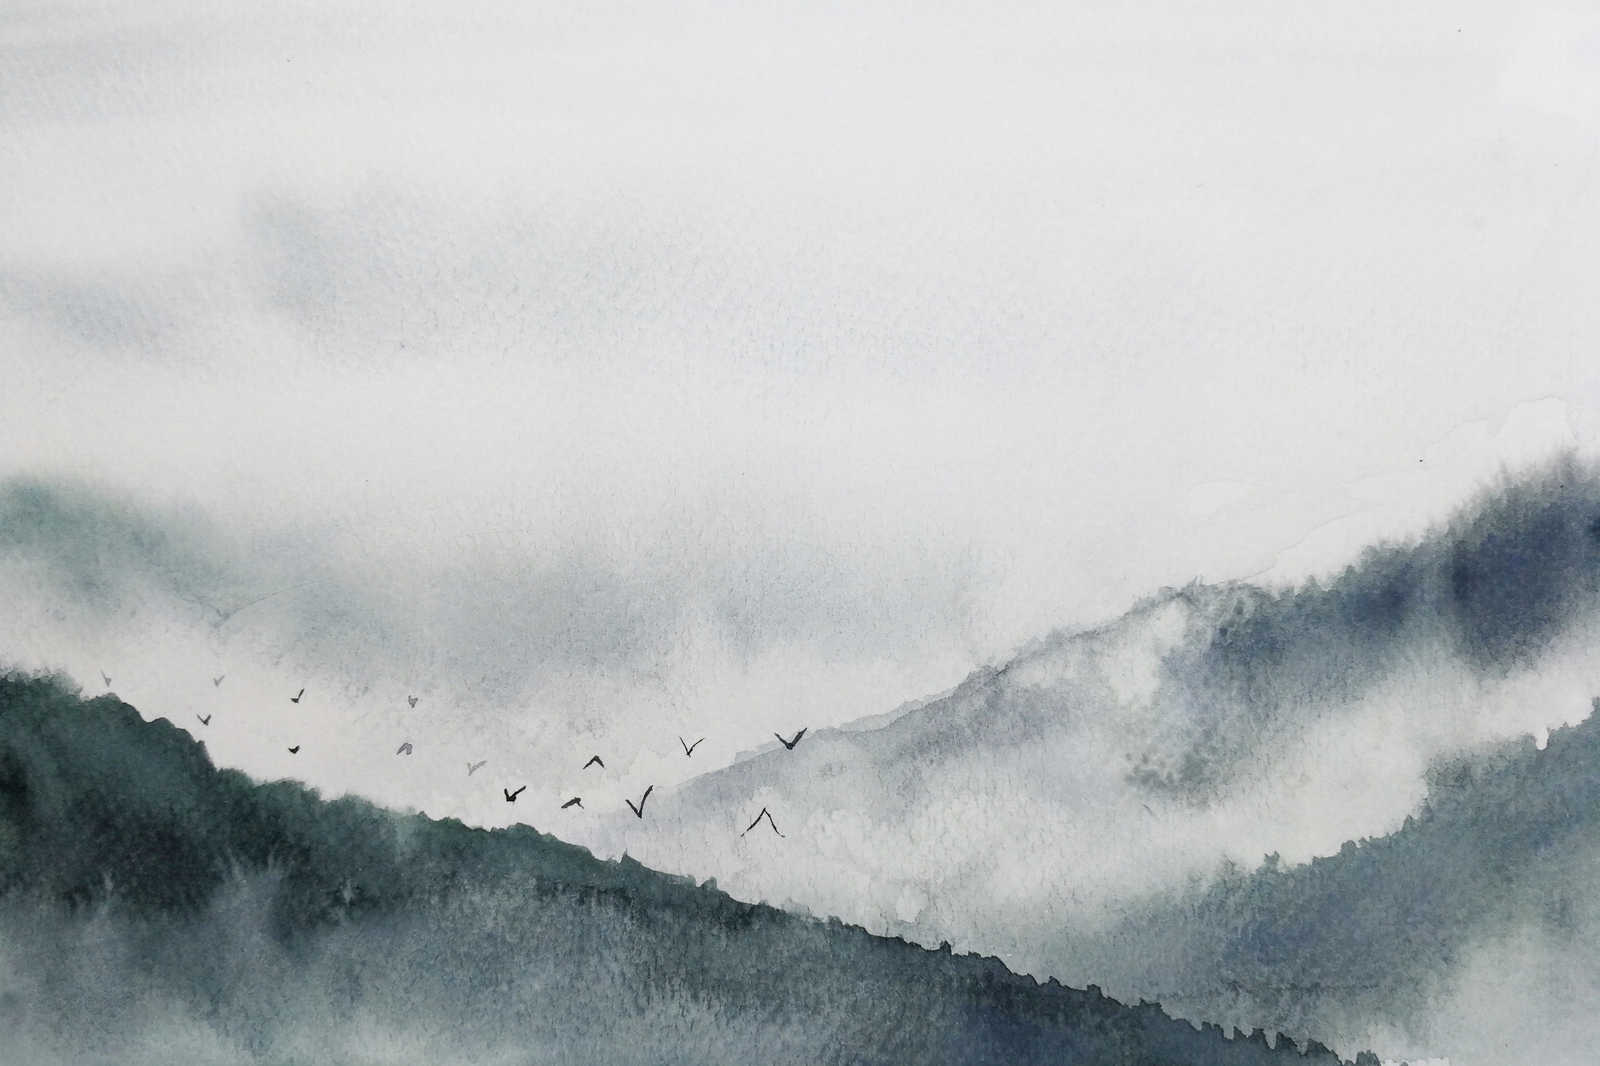             Toile avec paysage brumeux style peinture | gris, noir - 0,90 m x 0,60 m
        